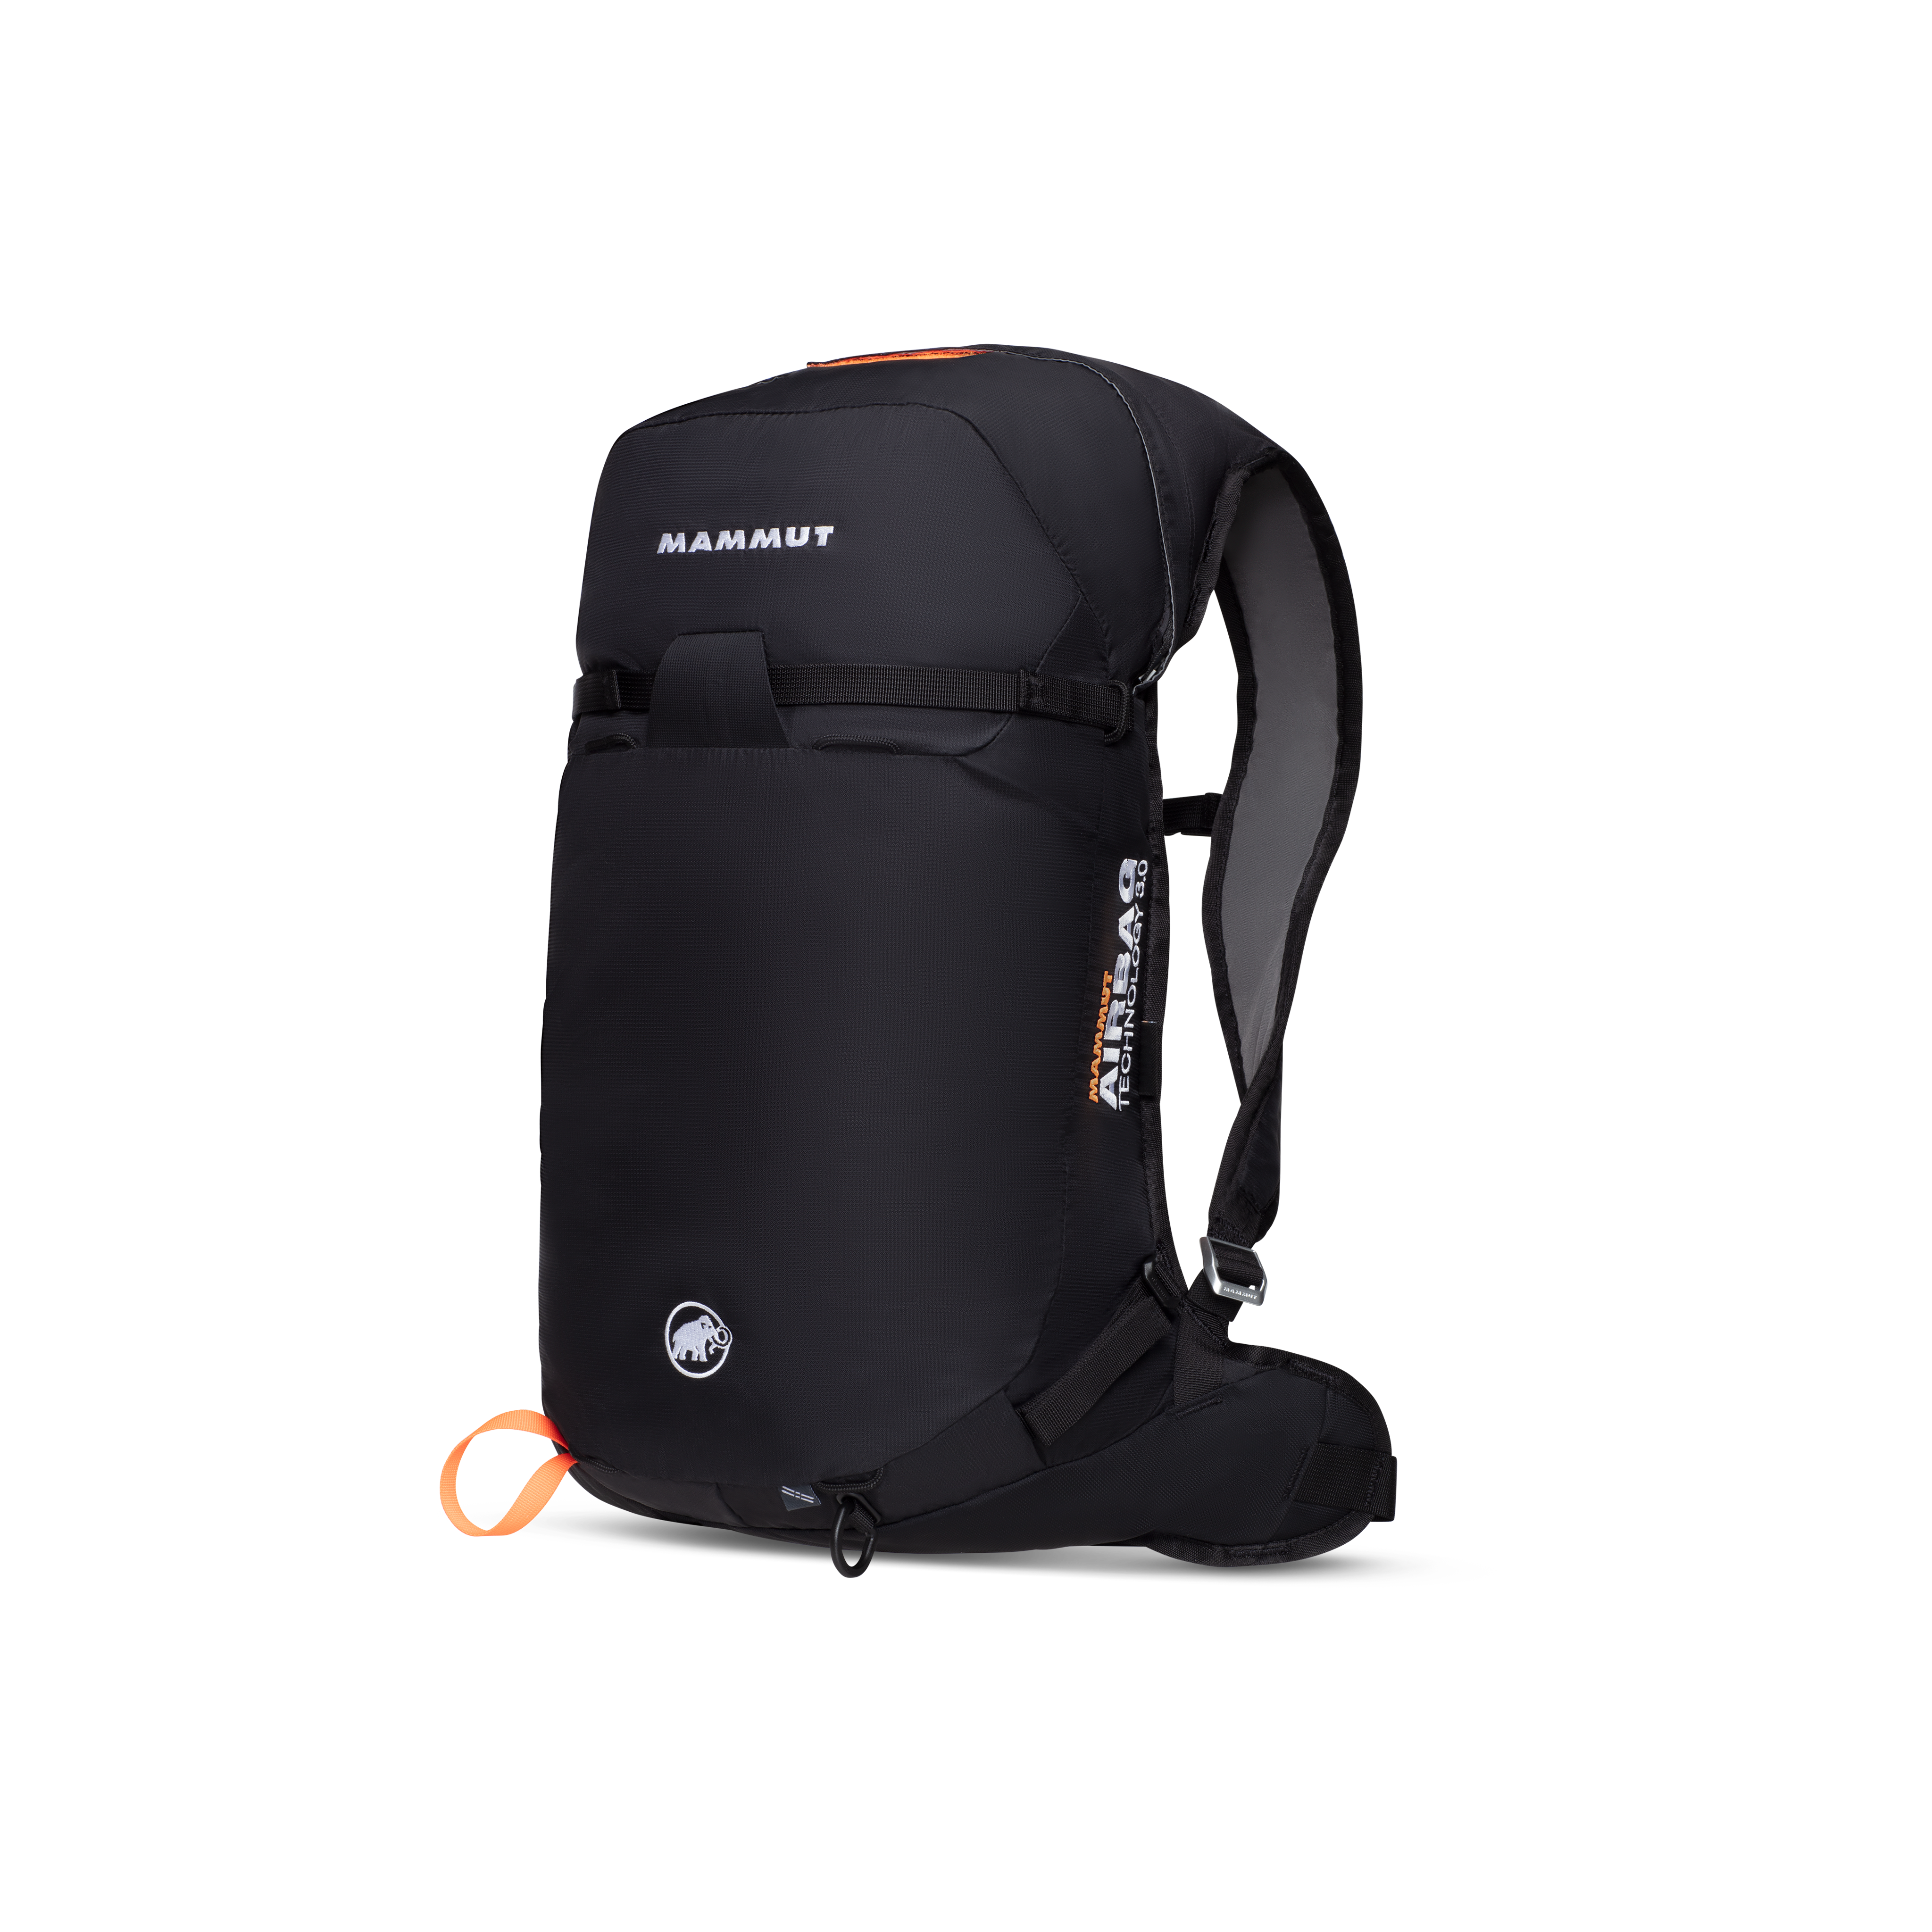 Ultralight Removable Airbag 3.0 - black-vibrant orange, 20 L thumbnail